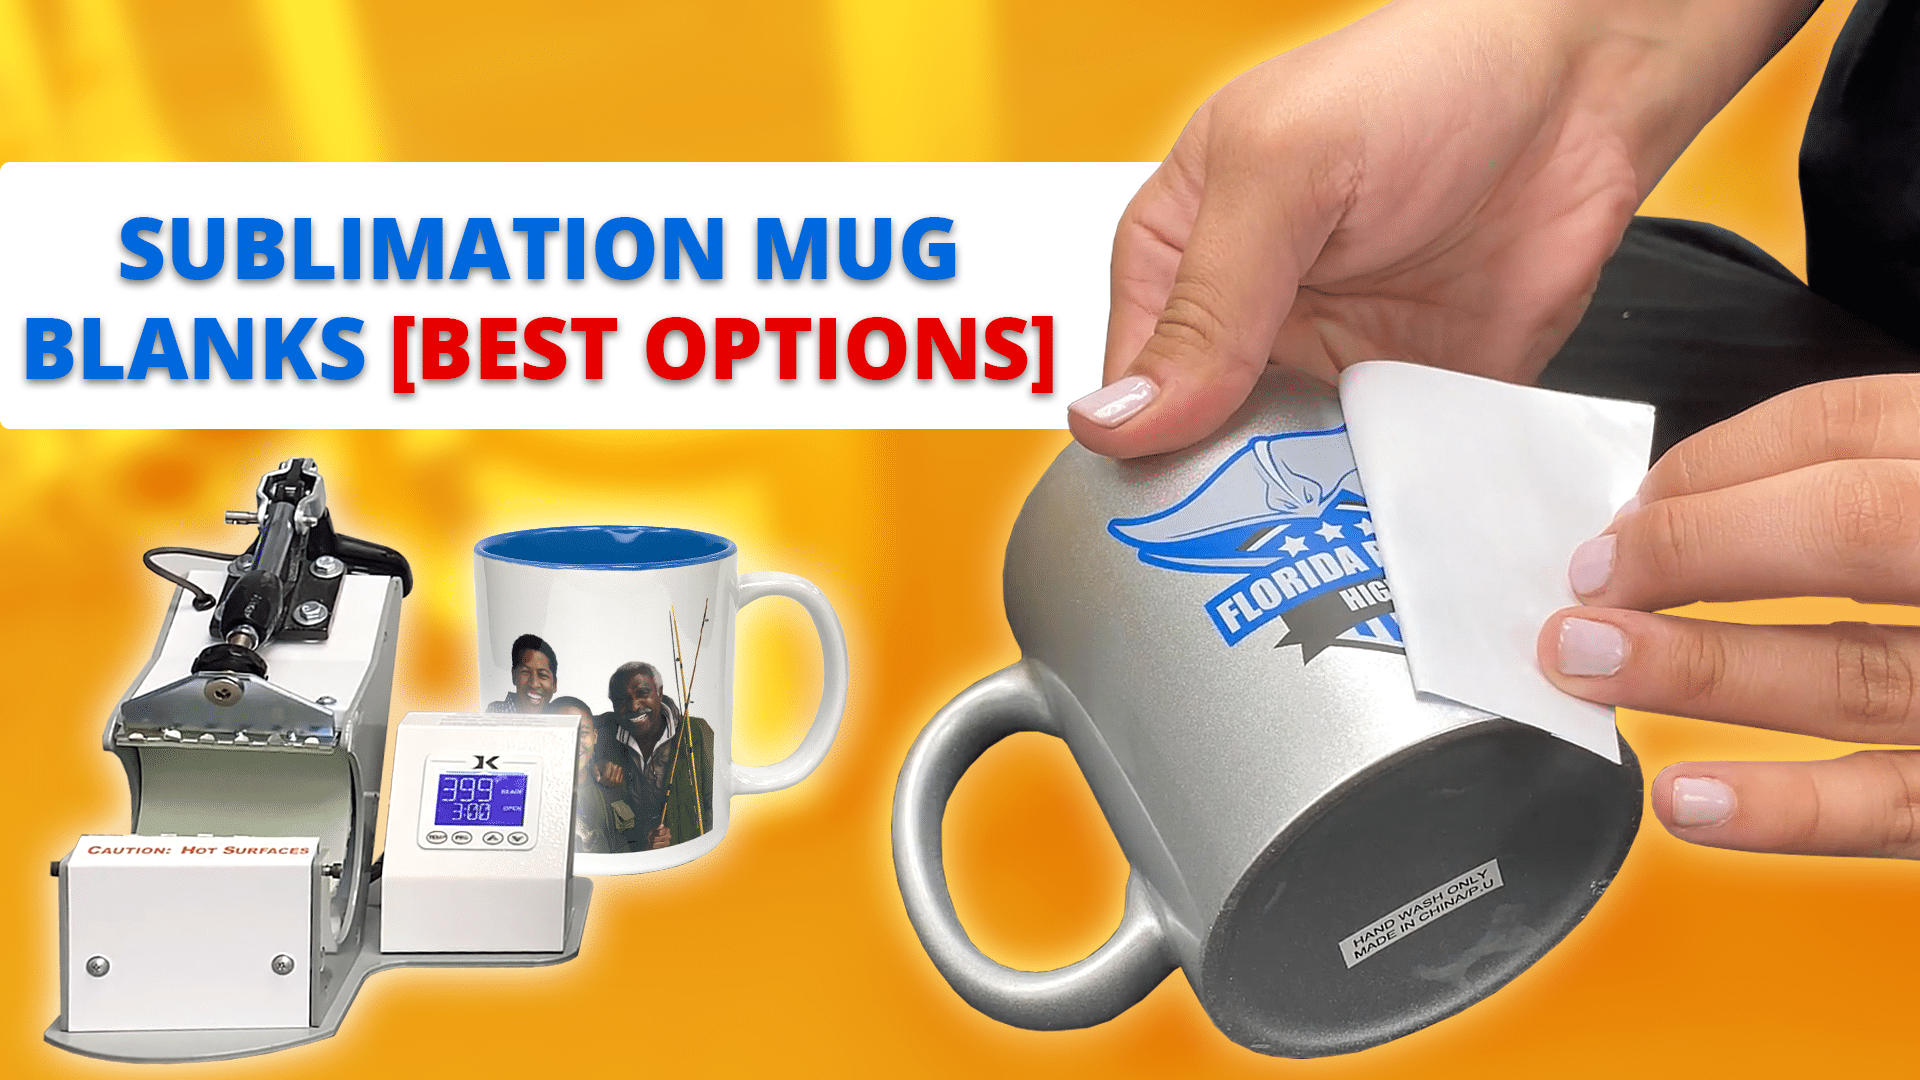 Sublimation Mug Blanks [Best Options] - Sublimation Mugs